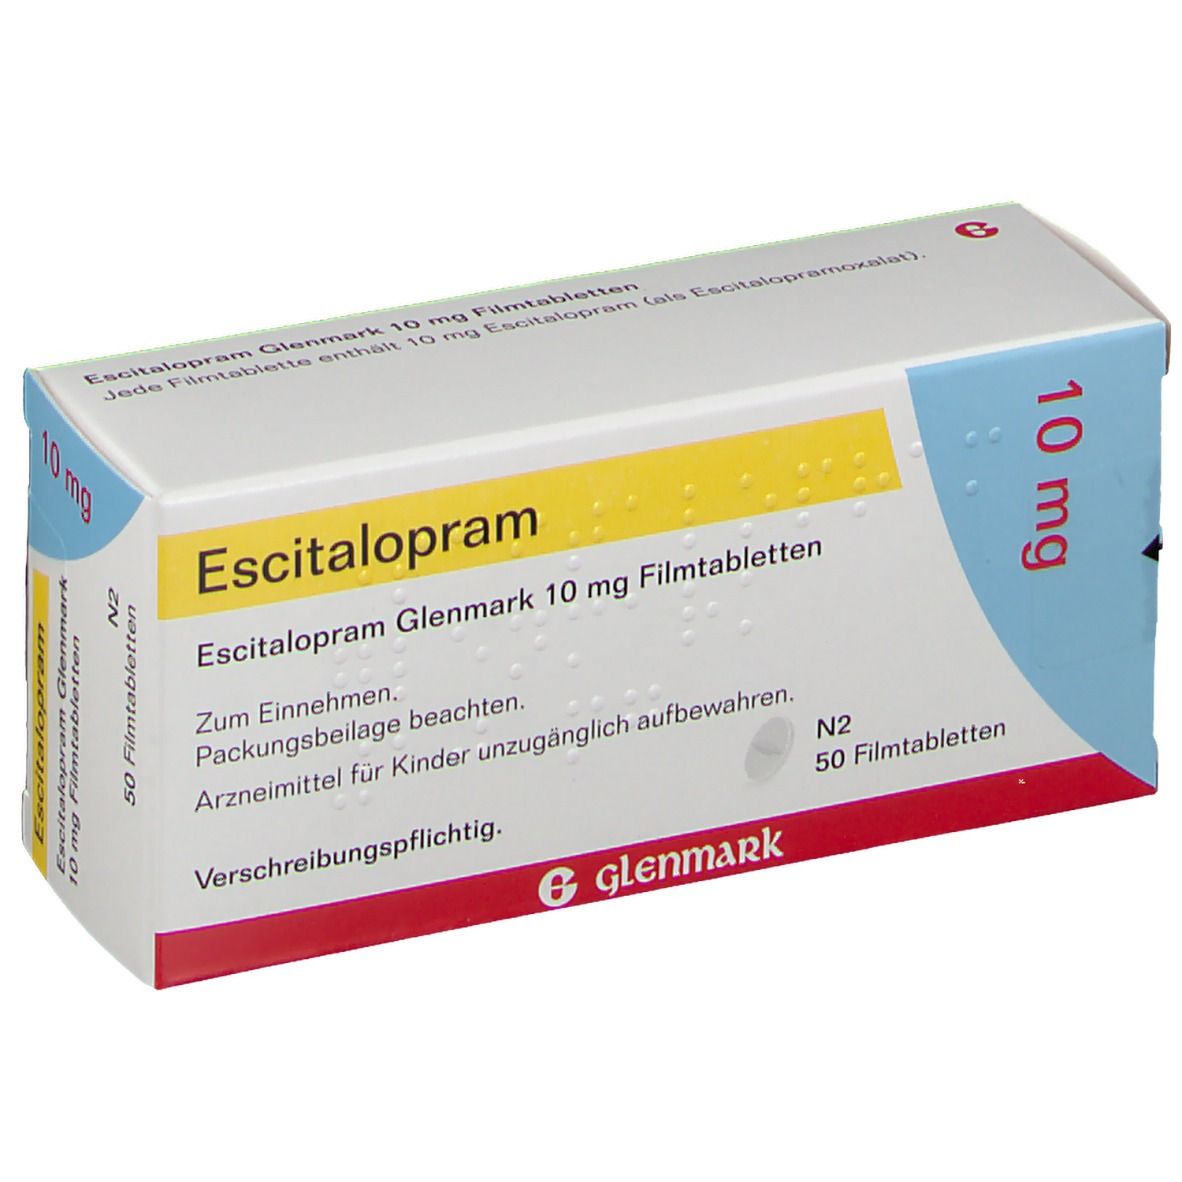 Escitalopram Glenmark 10 mg